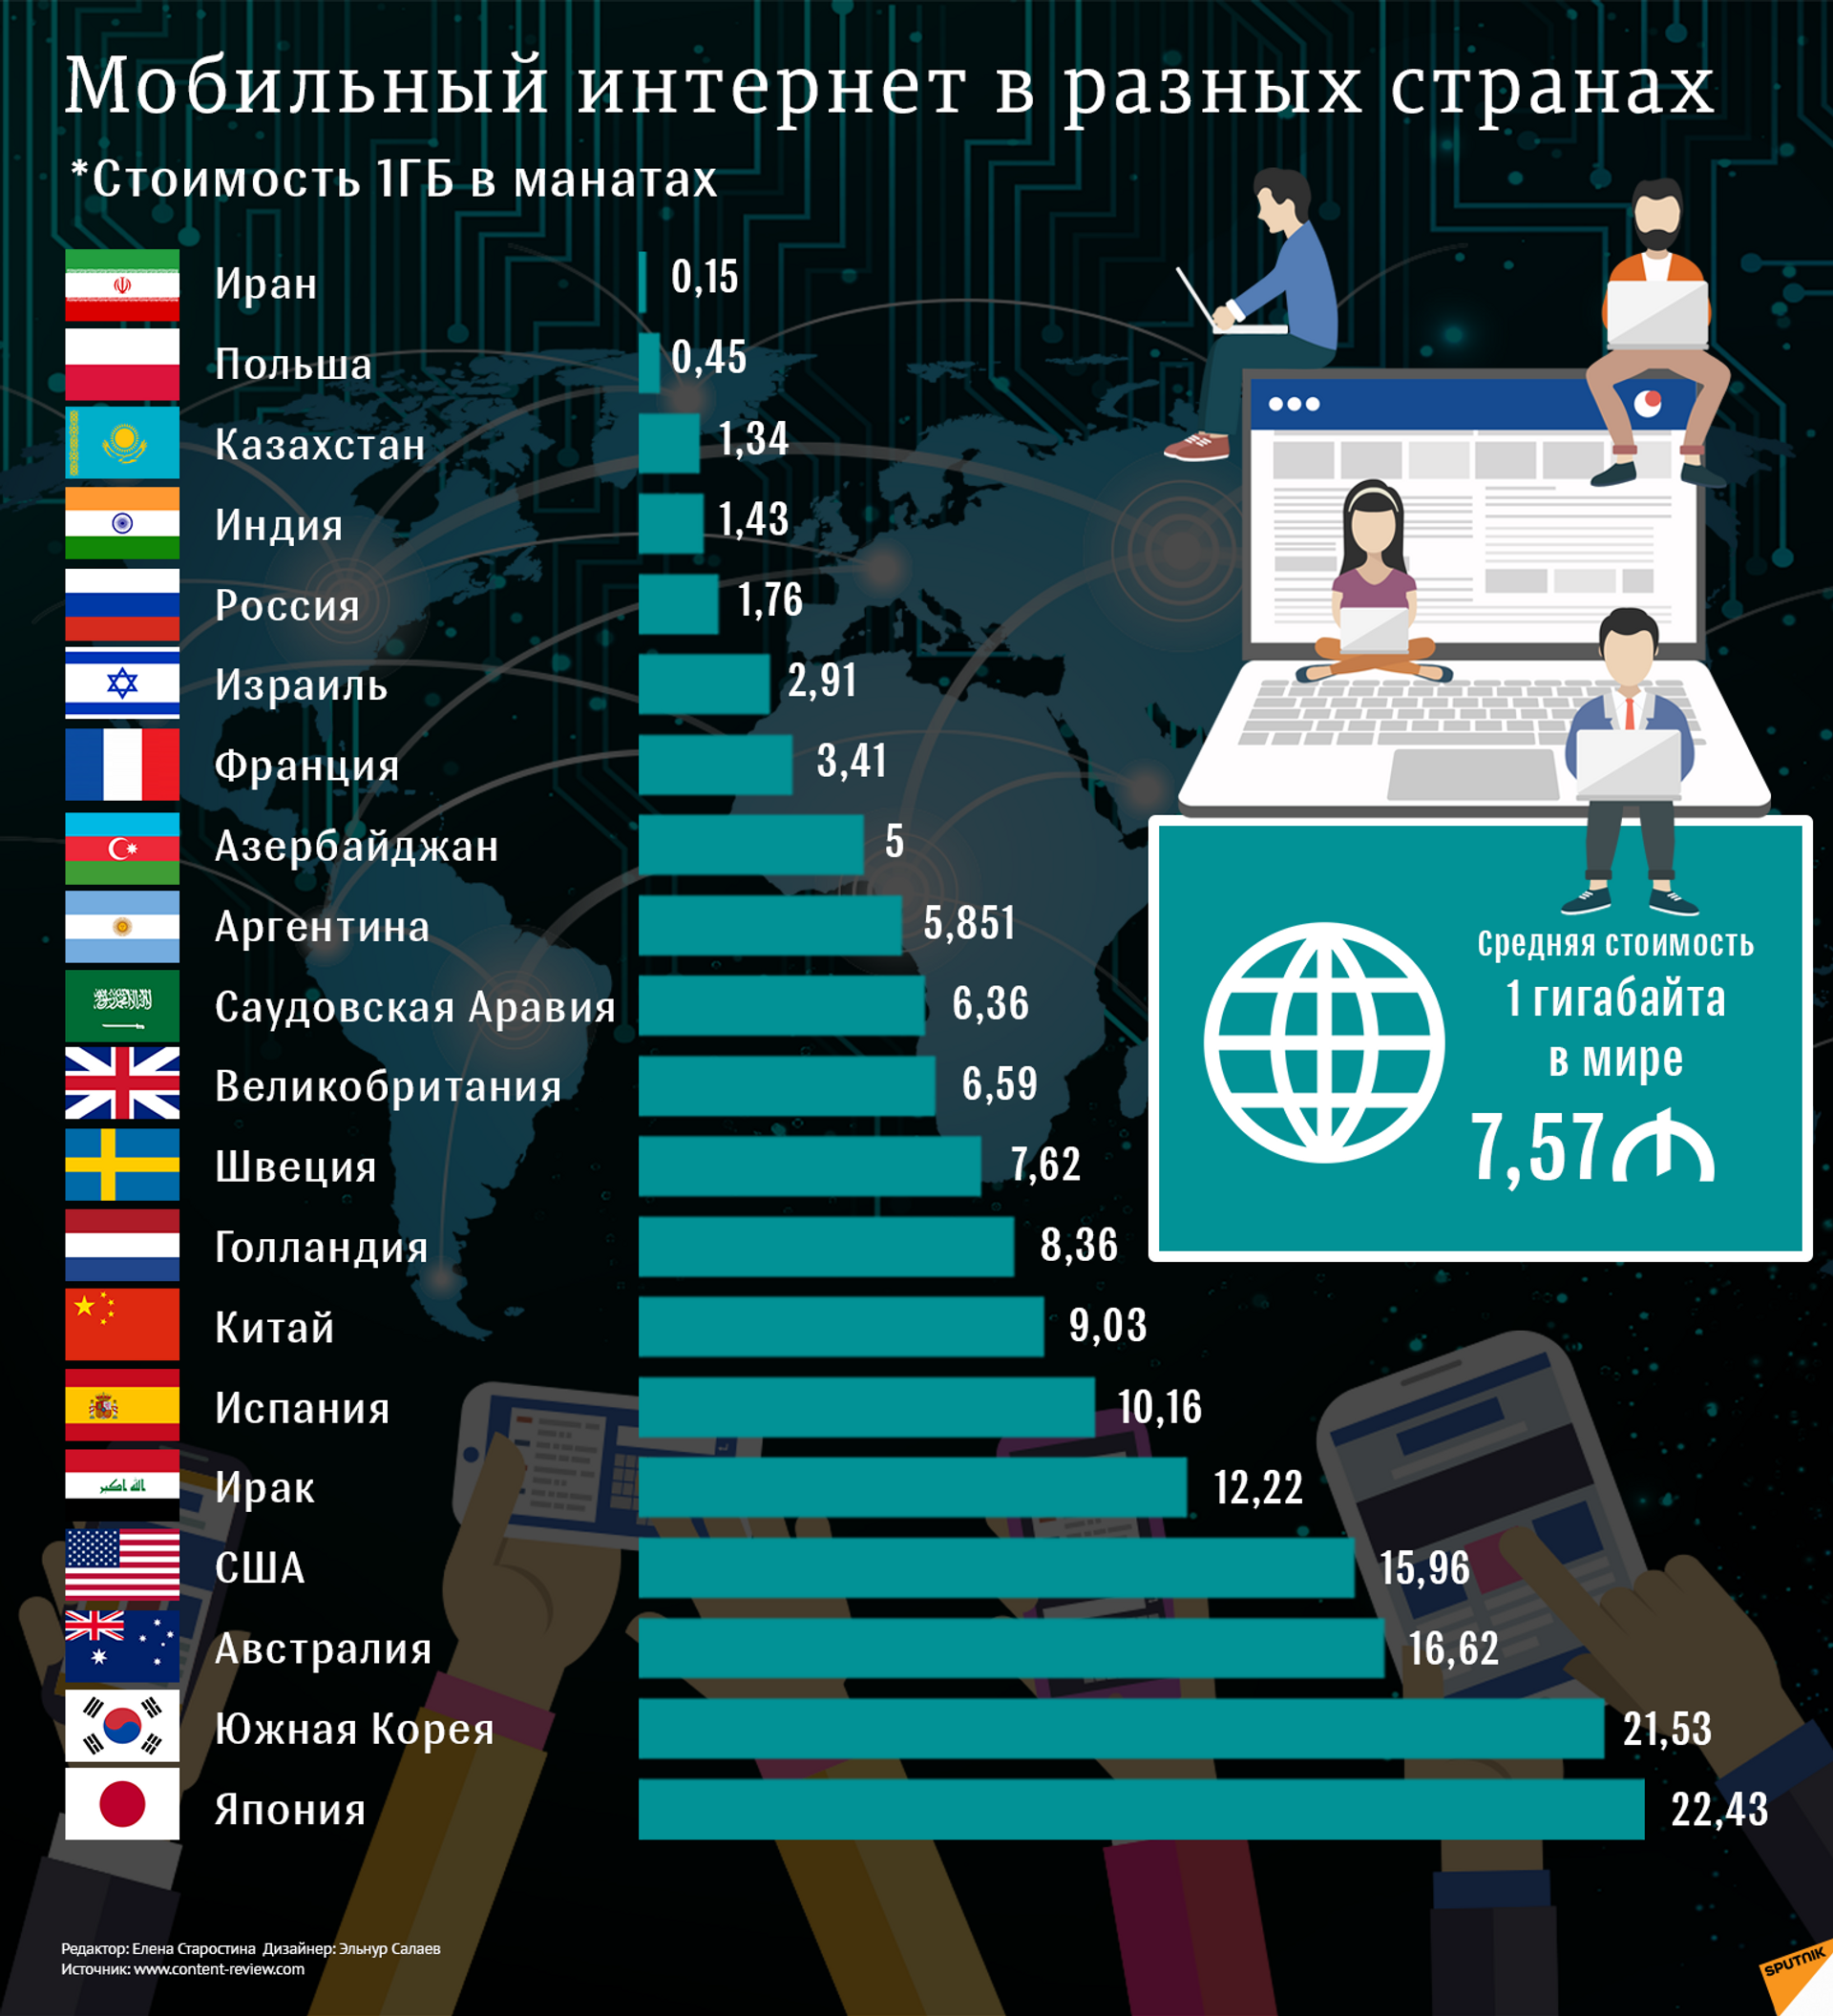 Ниже чем в других странах. Самый лучший интернет в мире. Использование интернета в разных странах. Рейтинг разных стран. Стоимость интернета по странам.